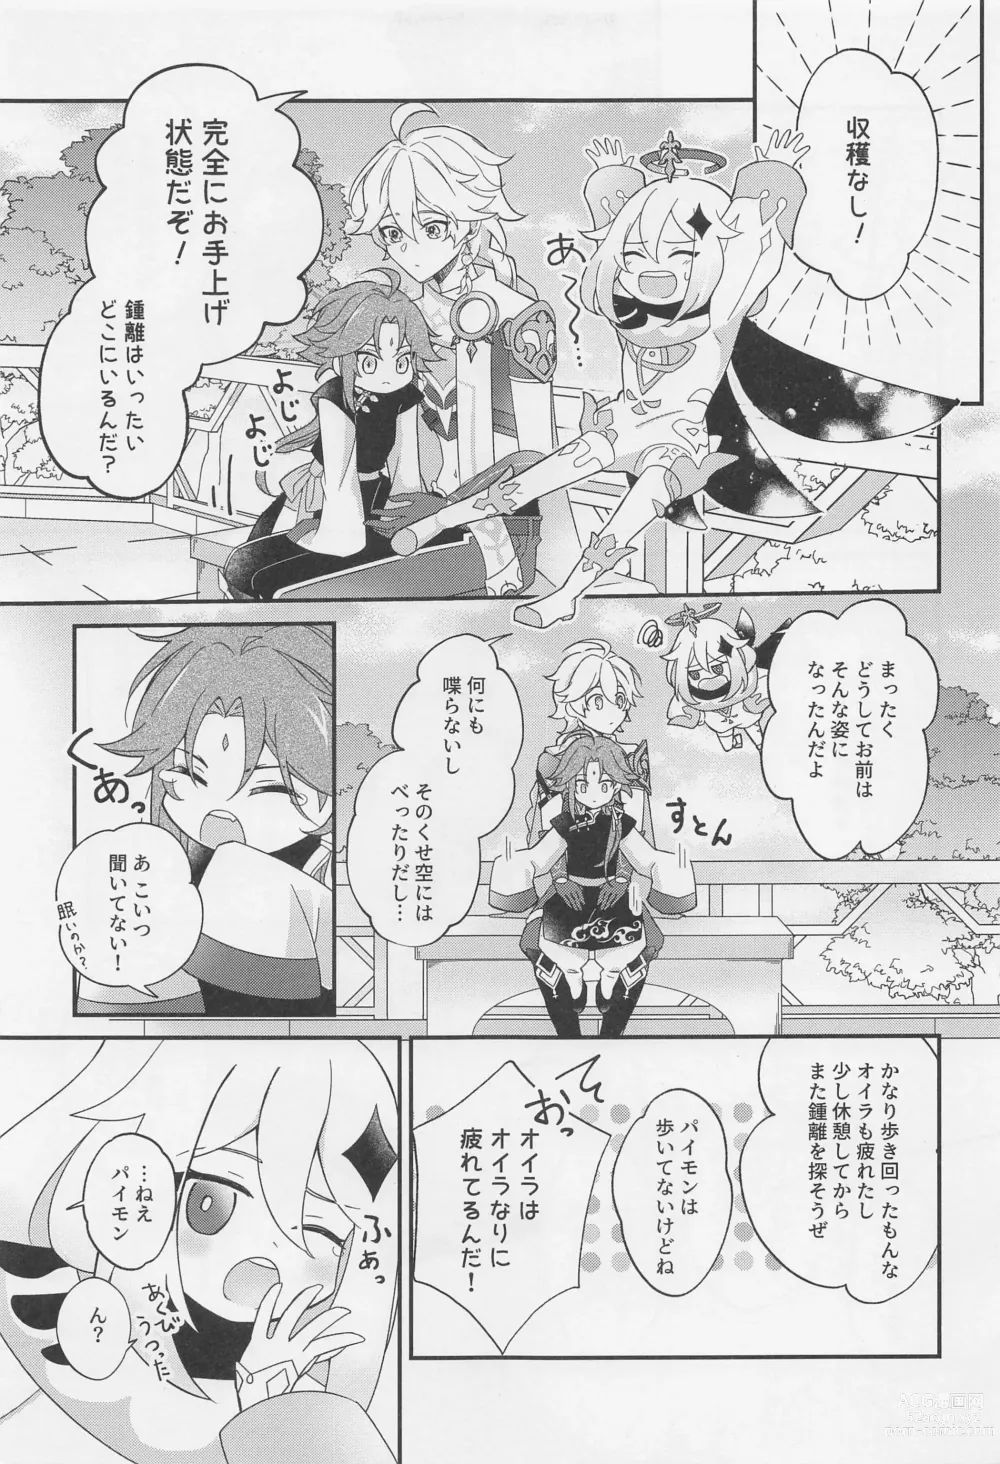 Page 12 of doujinshi Kimi o Wazurau